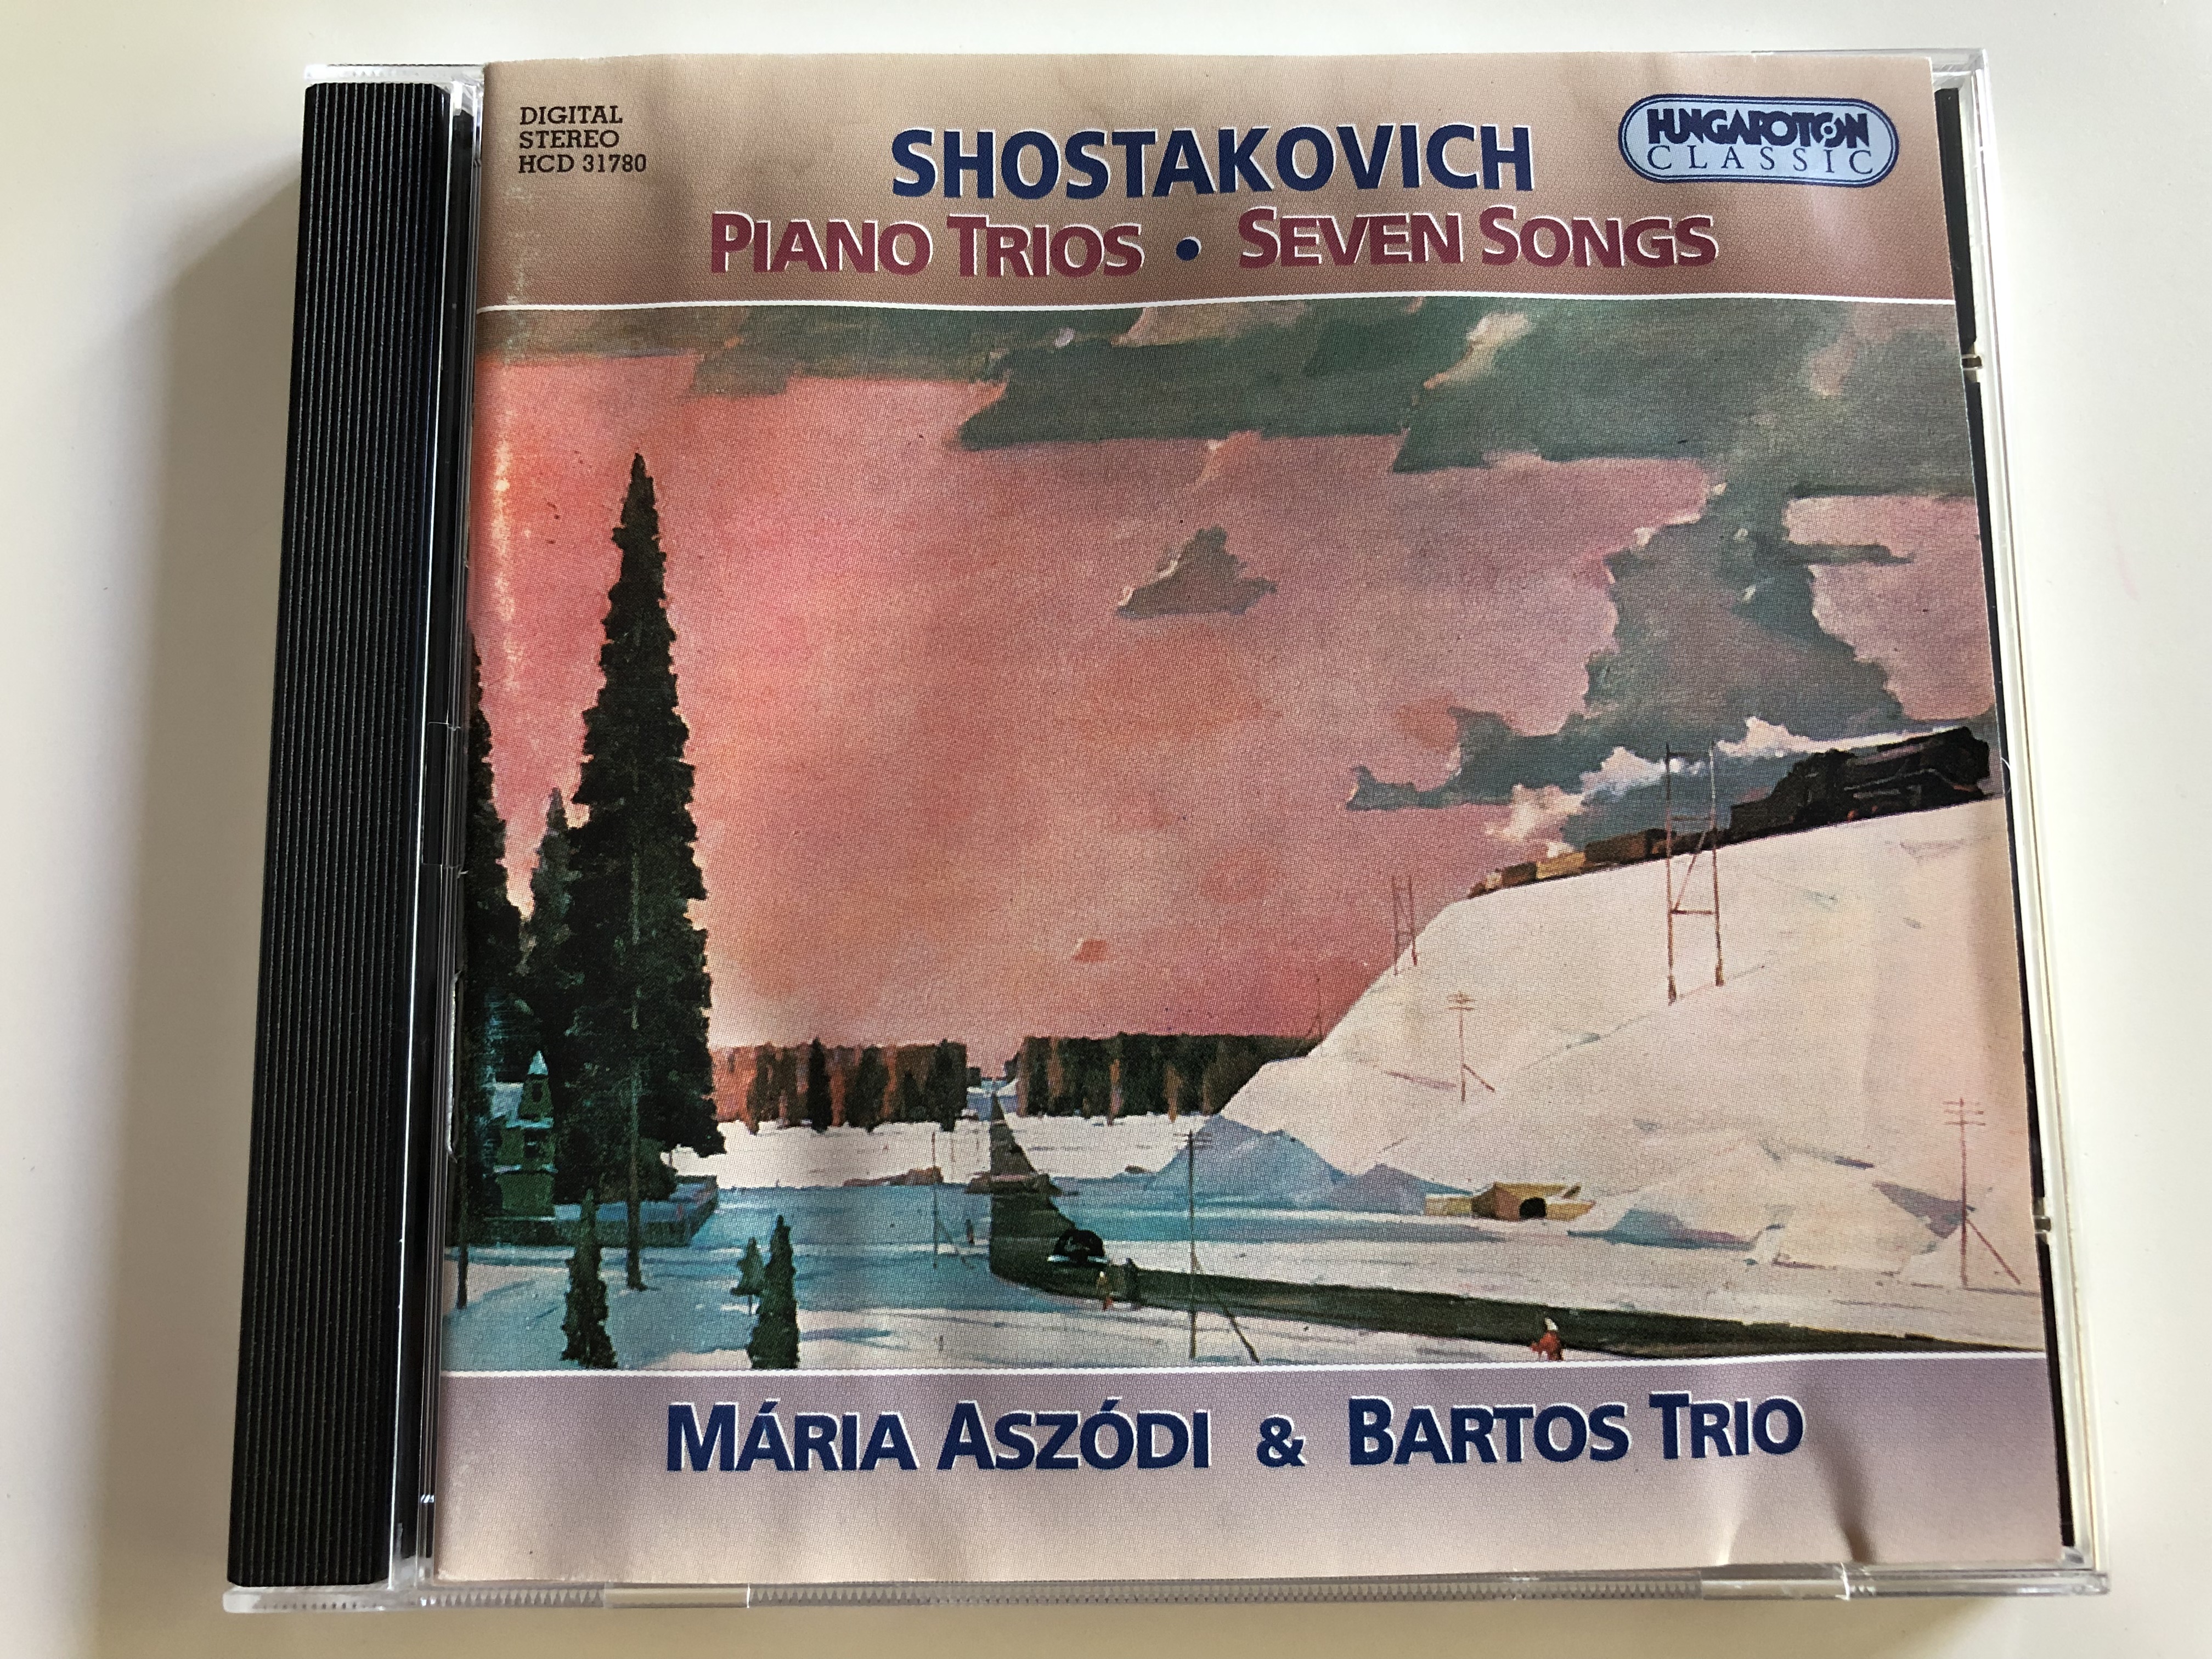 shostakovich-piano-trios-seven-songs-m-ria-asz-di-soprano-bartos-trio-galina-danilova-violin-csaba-bartos-cello-irina-ivanickaia-piano-hungaroton-classic-hcd-31780-audio-cd-1999-1-.jpg